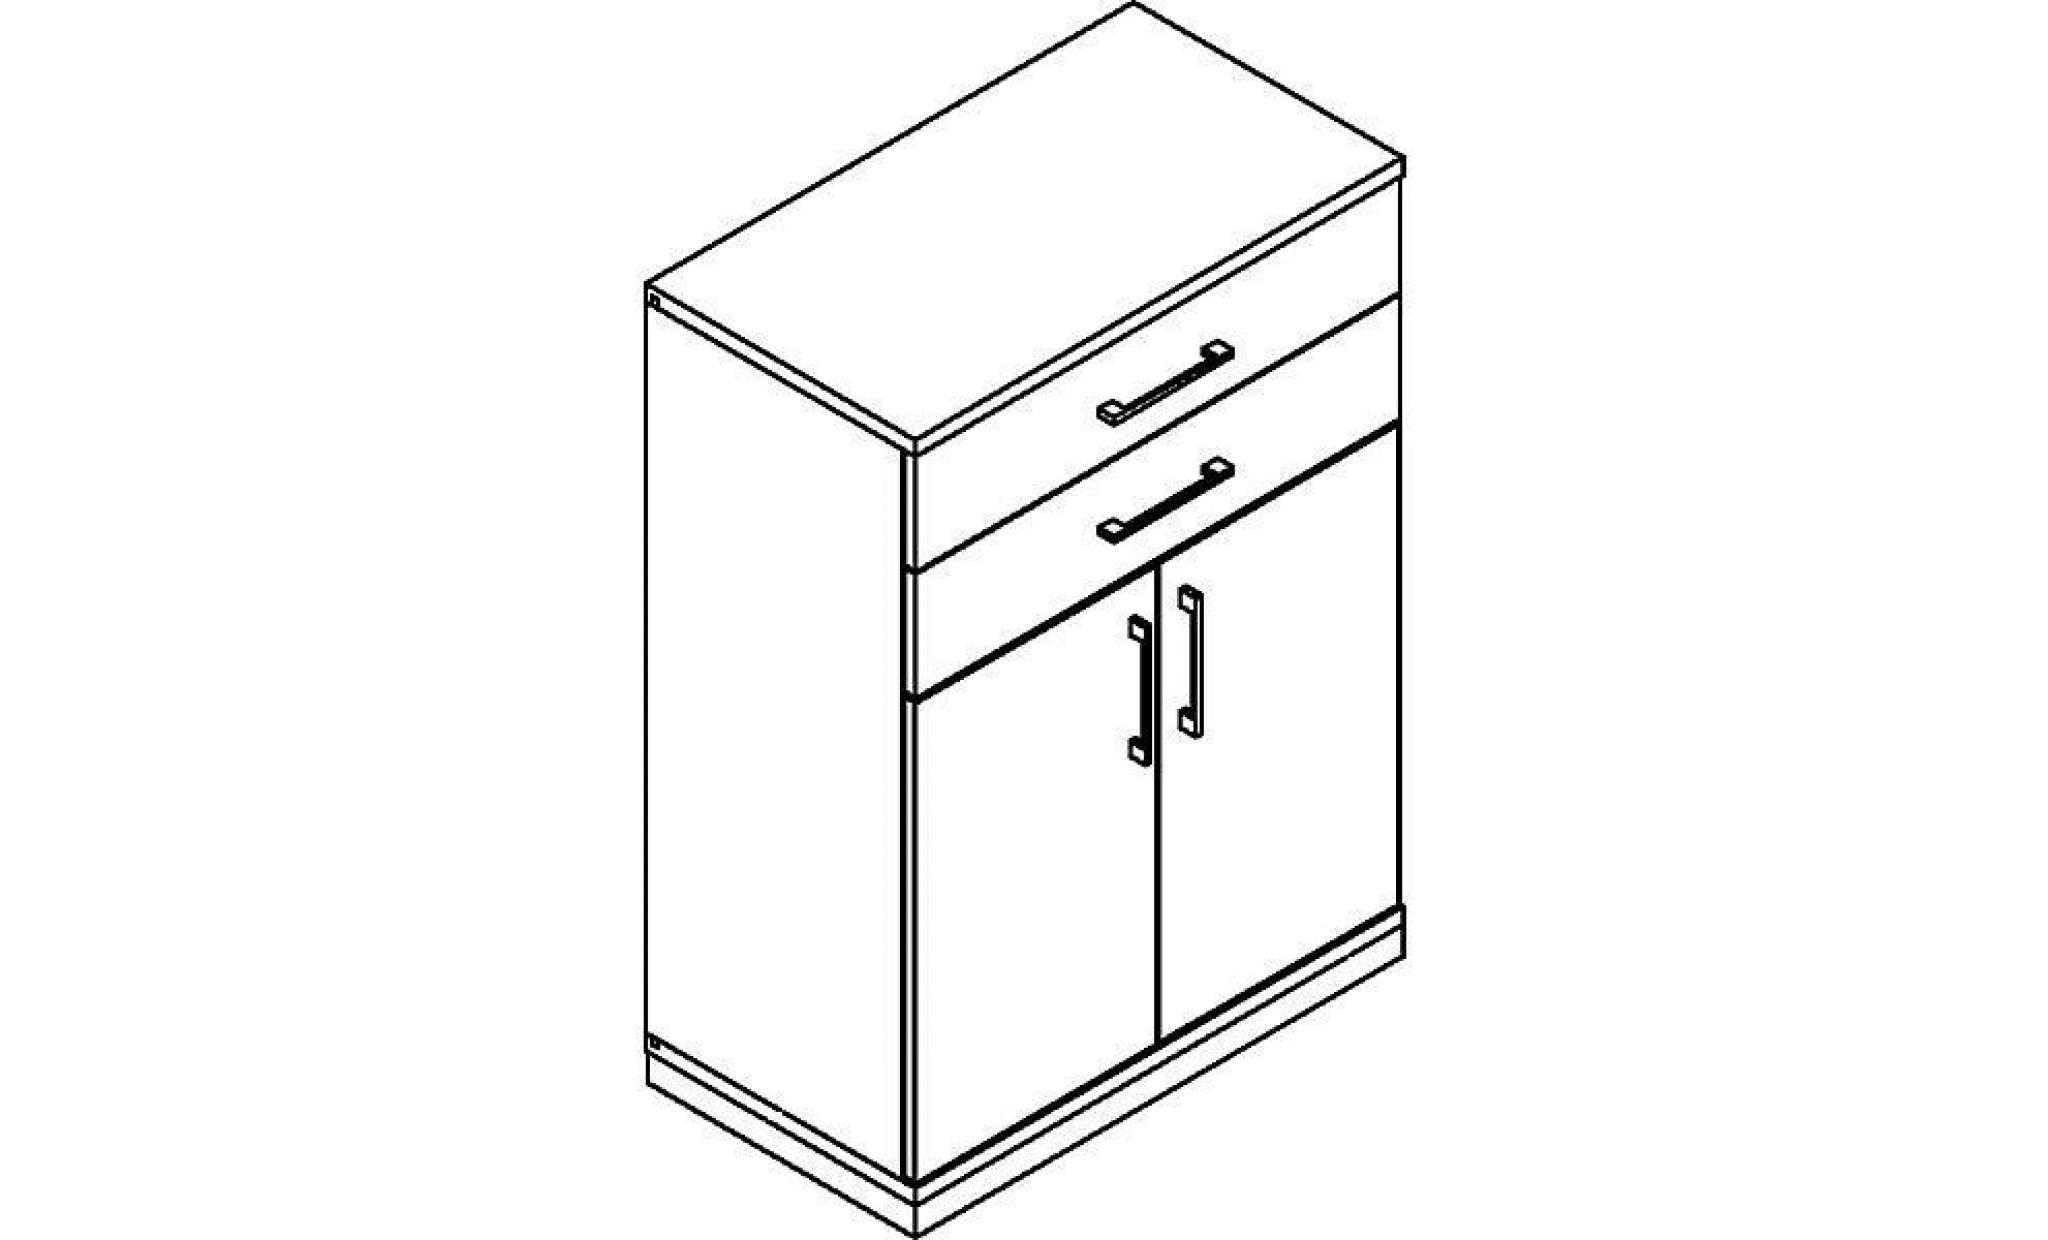 thea armoire combinée   2 tablettes, 2 portes, 2 tiroirs   gris clair   armoire de bureau armoire et rayonnage combinés armoire pas cher